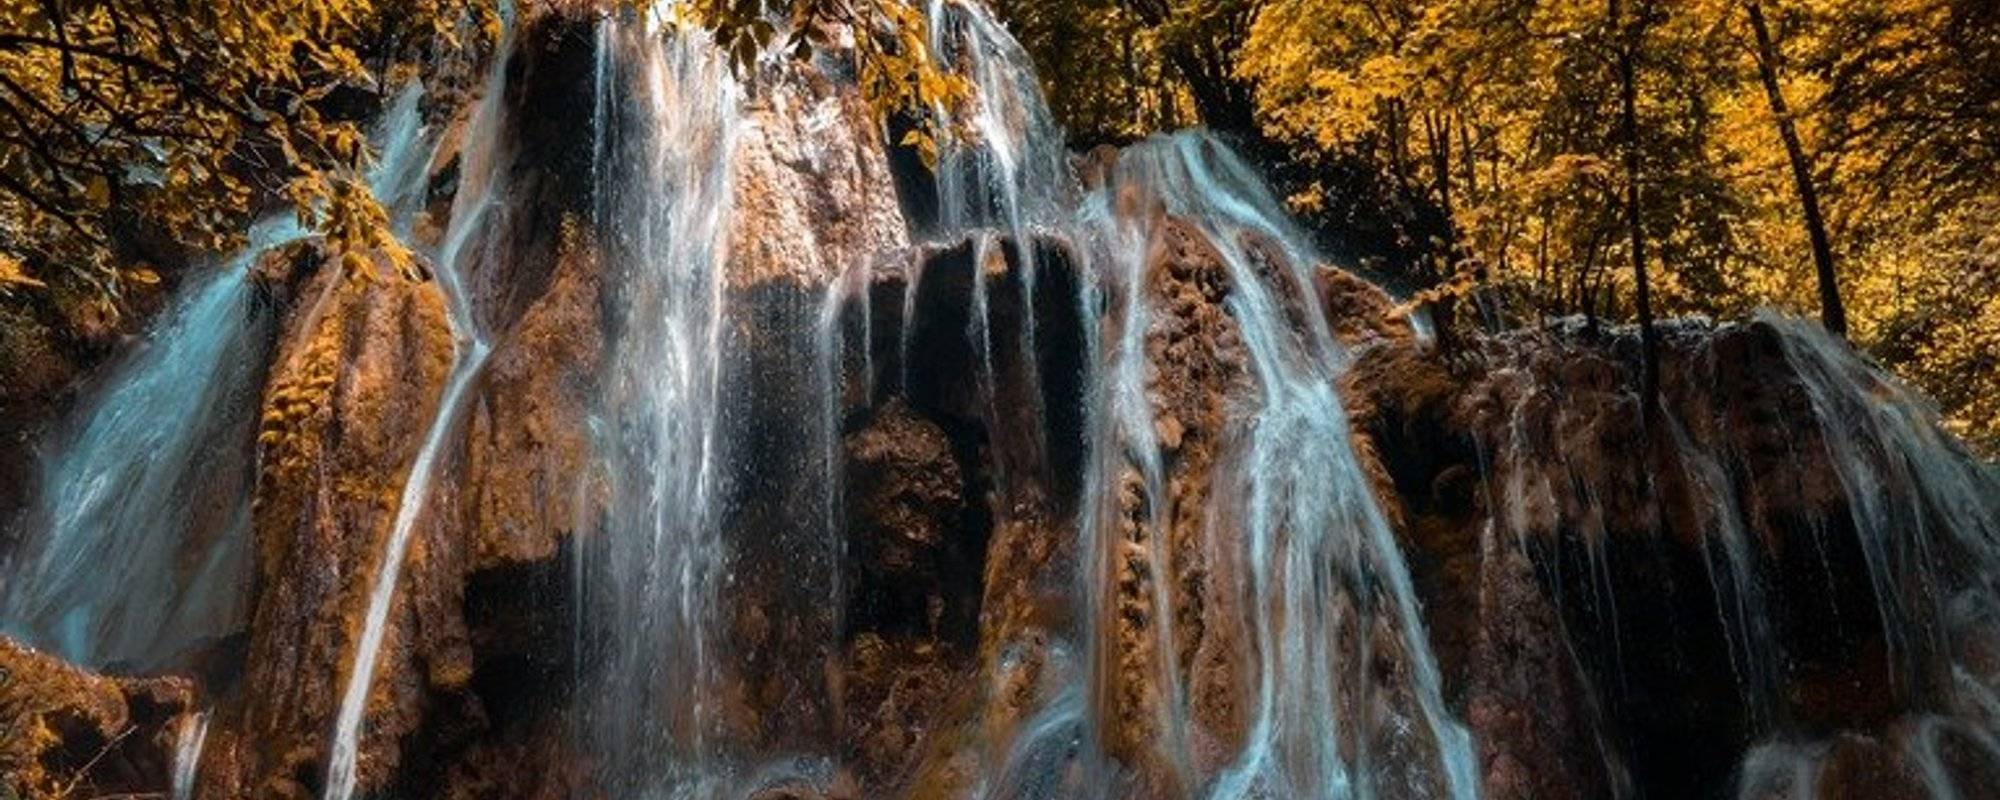 Let's travel together #43 - Beuşniţa Waterfall (Cascada Beuşniţa)